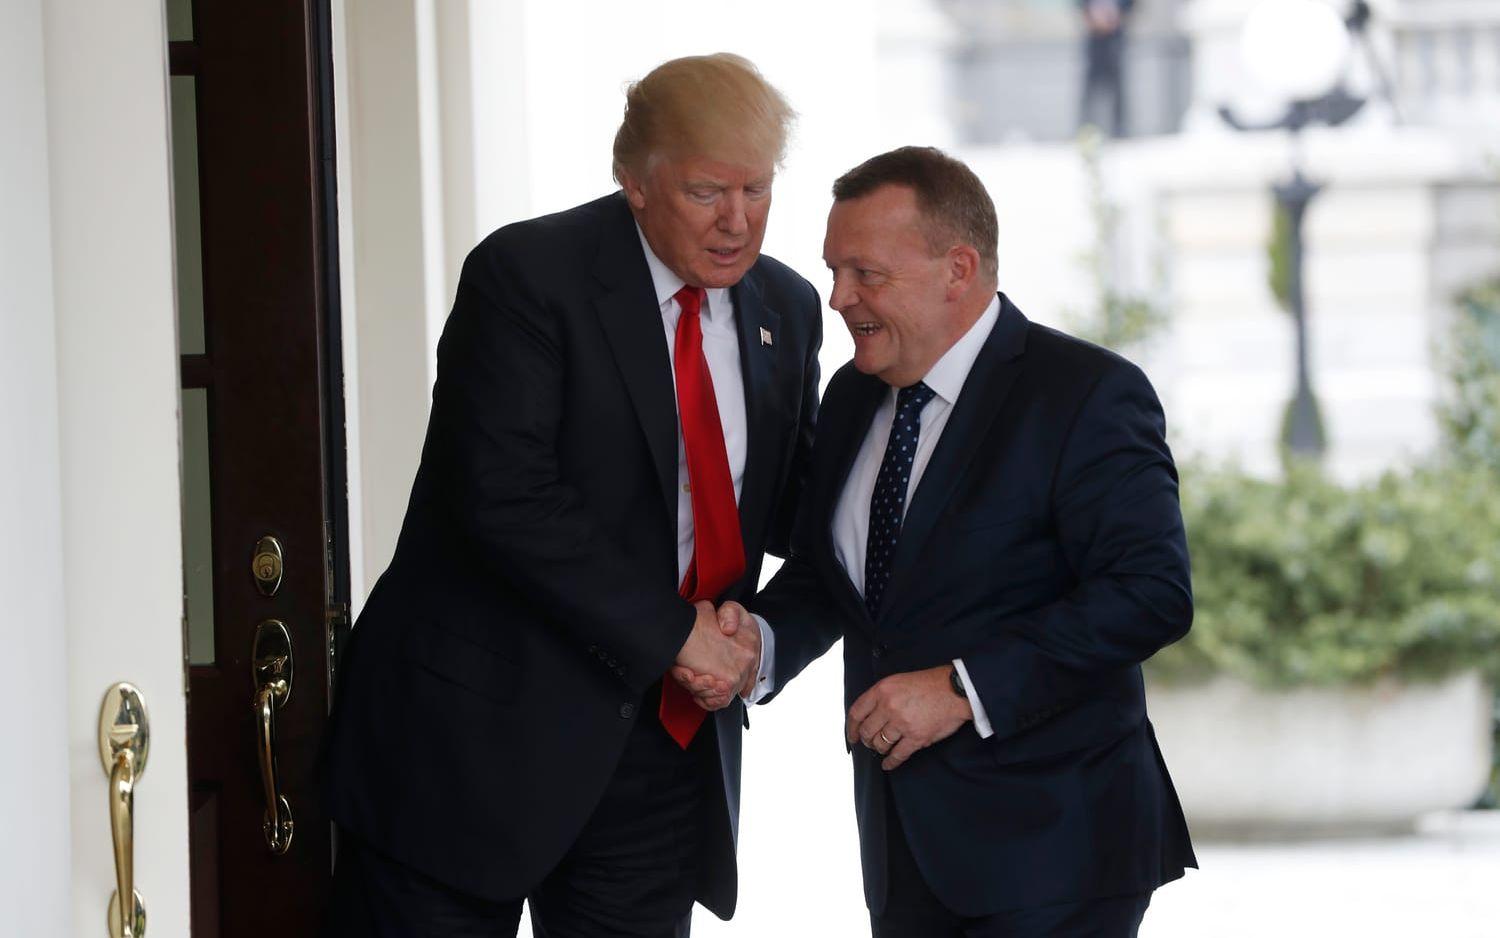 30 MARS: Trump hälsar Danmarks premiärminister Lars Løkke Rasmussen välkommen till Vita Huset. Foto: TT